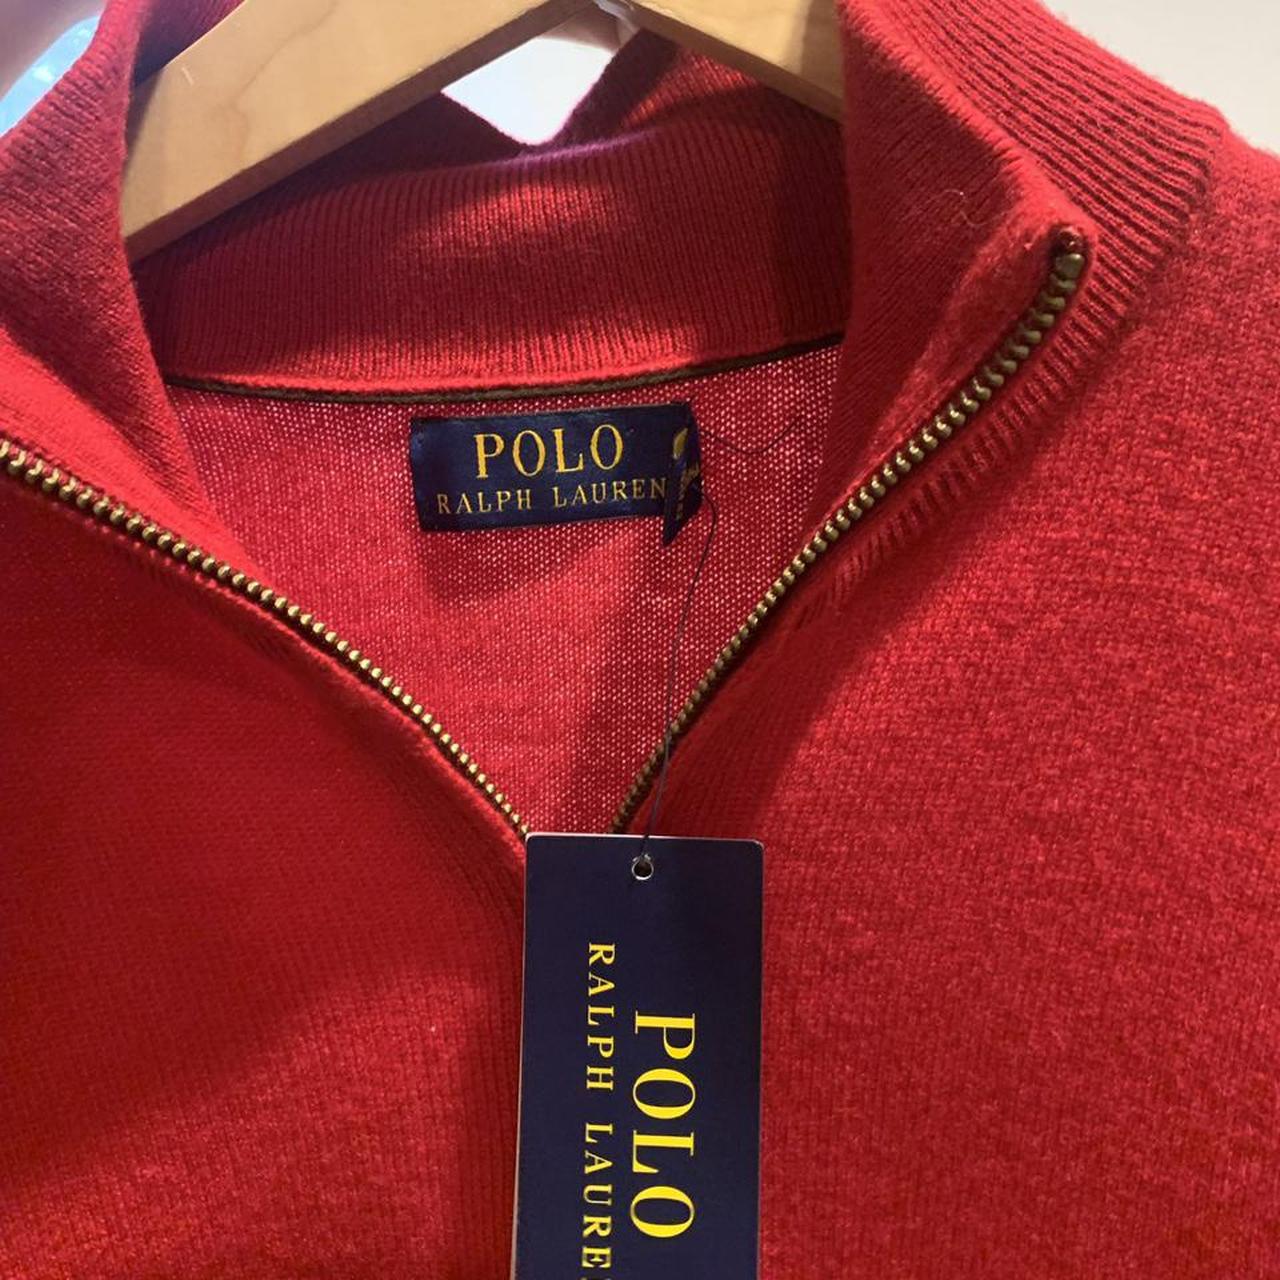 Red polo Ralph Lauren quarter zip sweater men’s size... - Depop